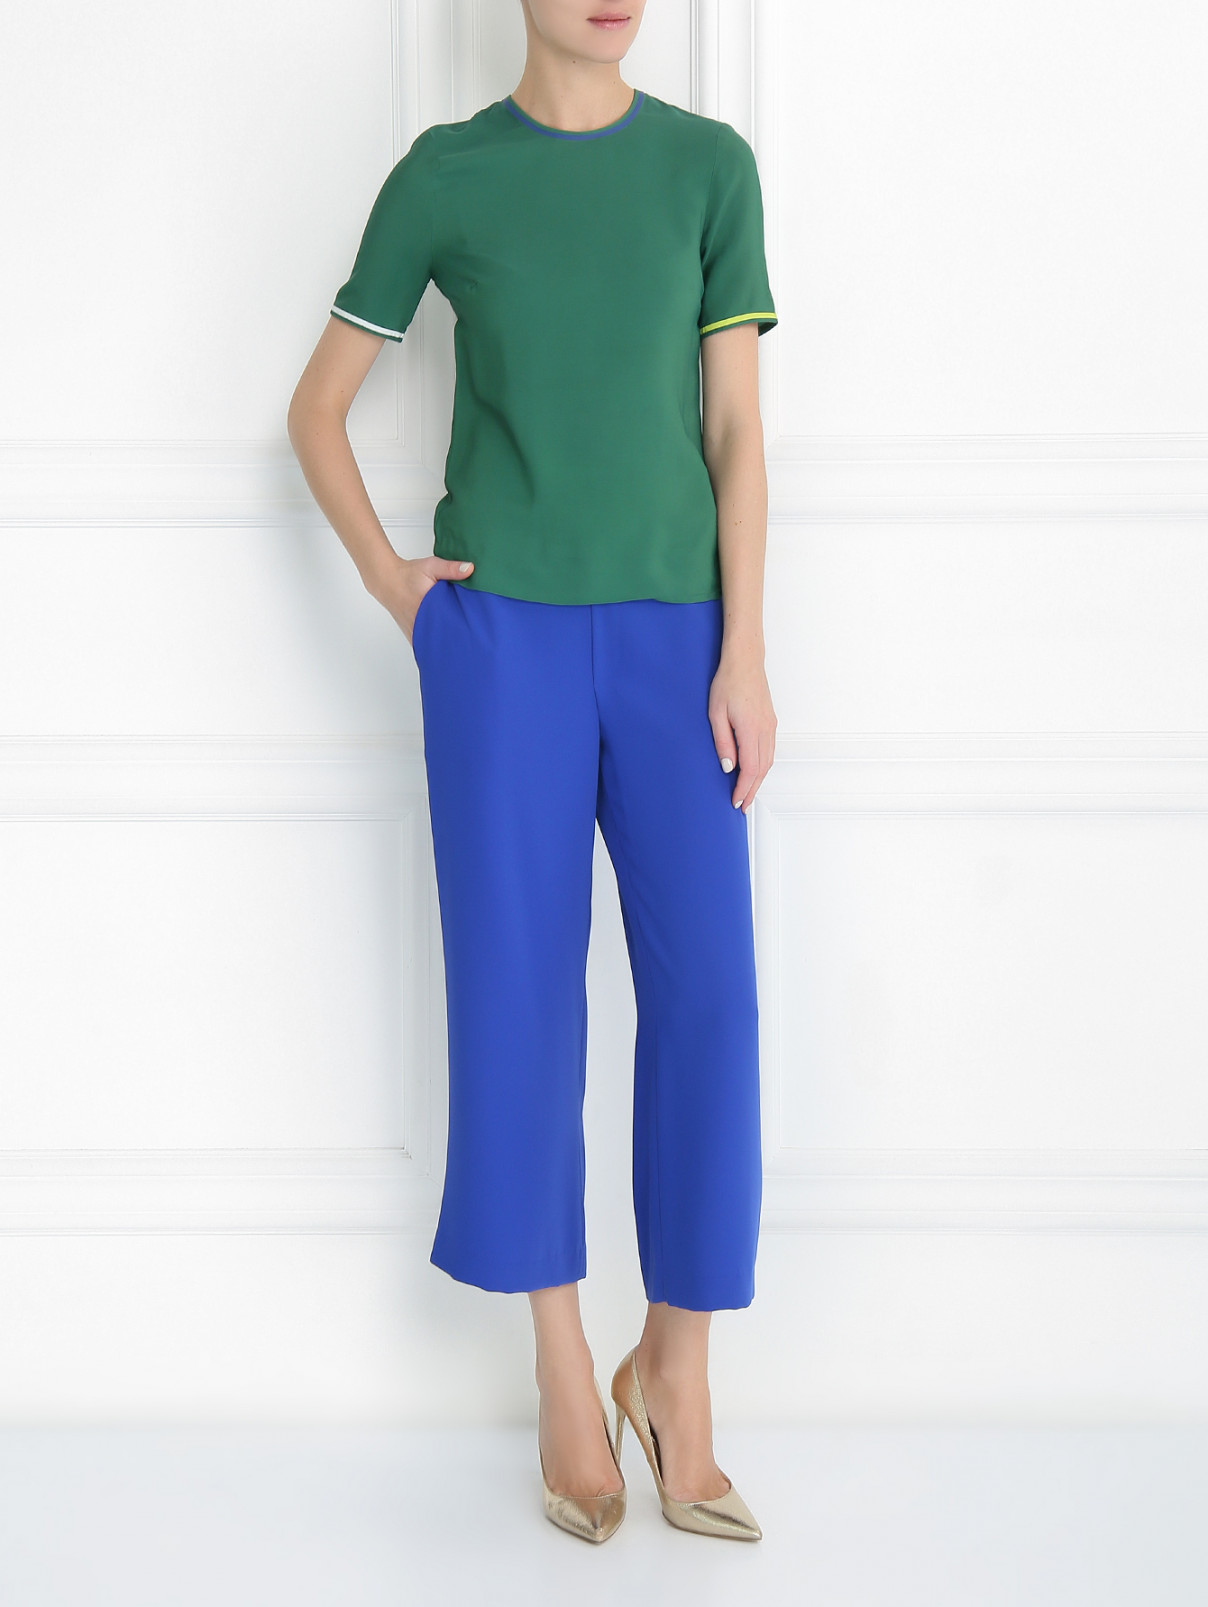 Блуза с контрастной отделкой Paul Smith  –  Модель Общий вид  – Цвет:  Зеленый